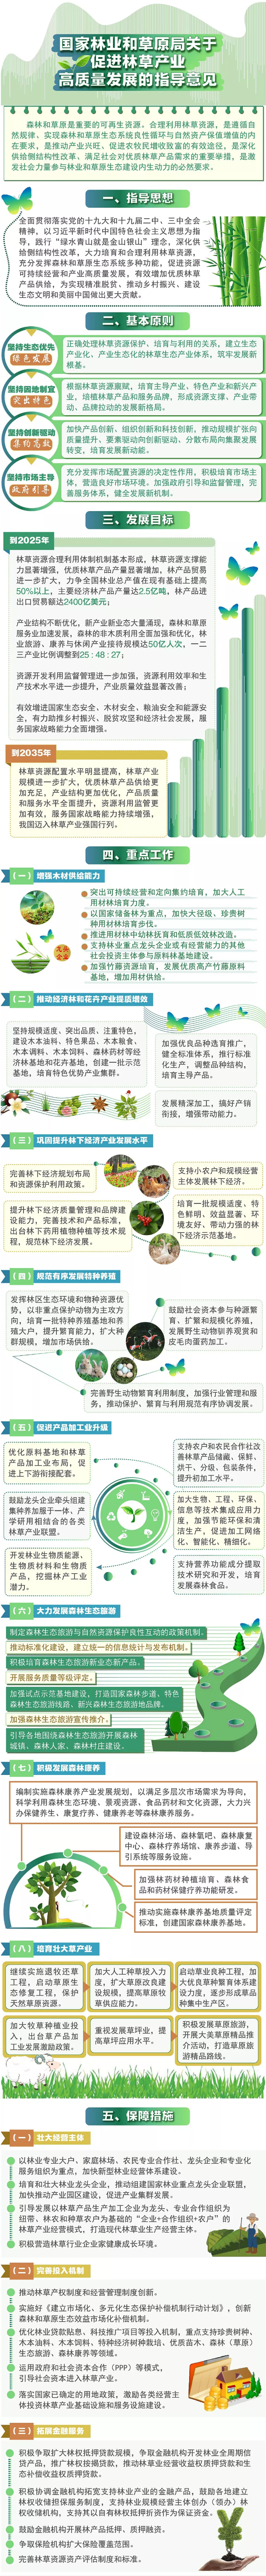 中国林业网.jpg